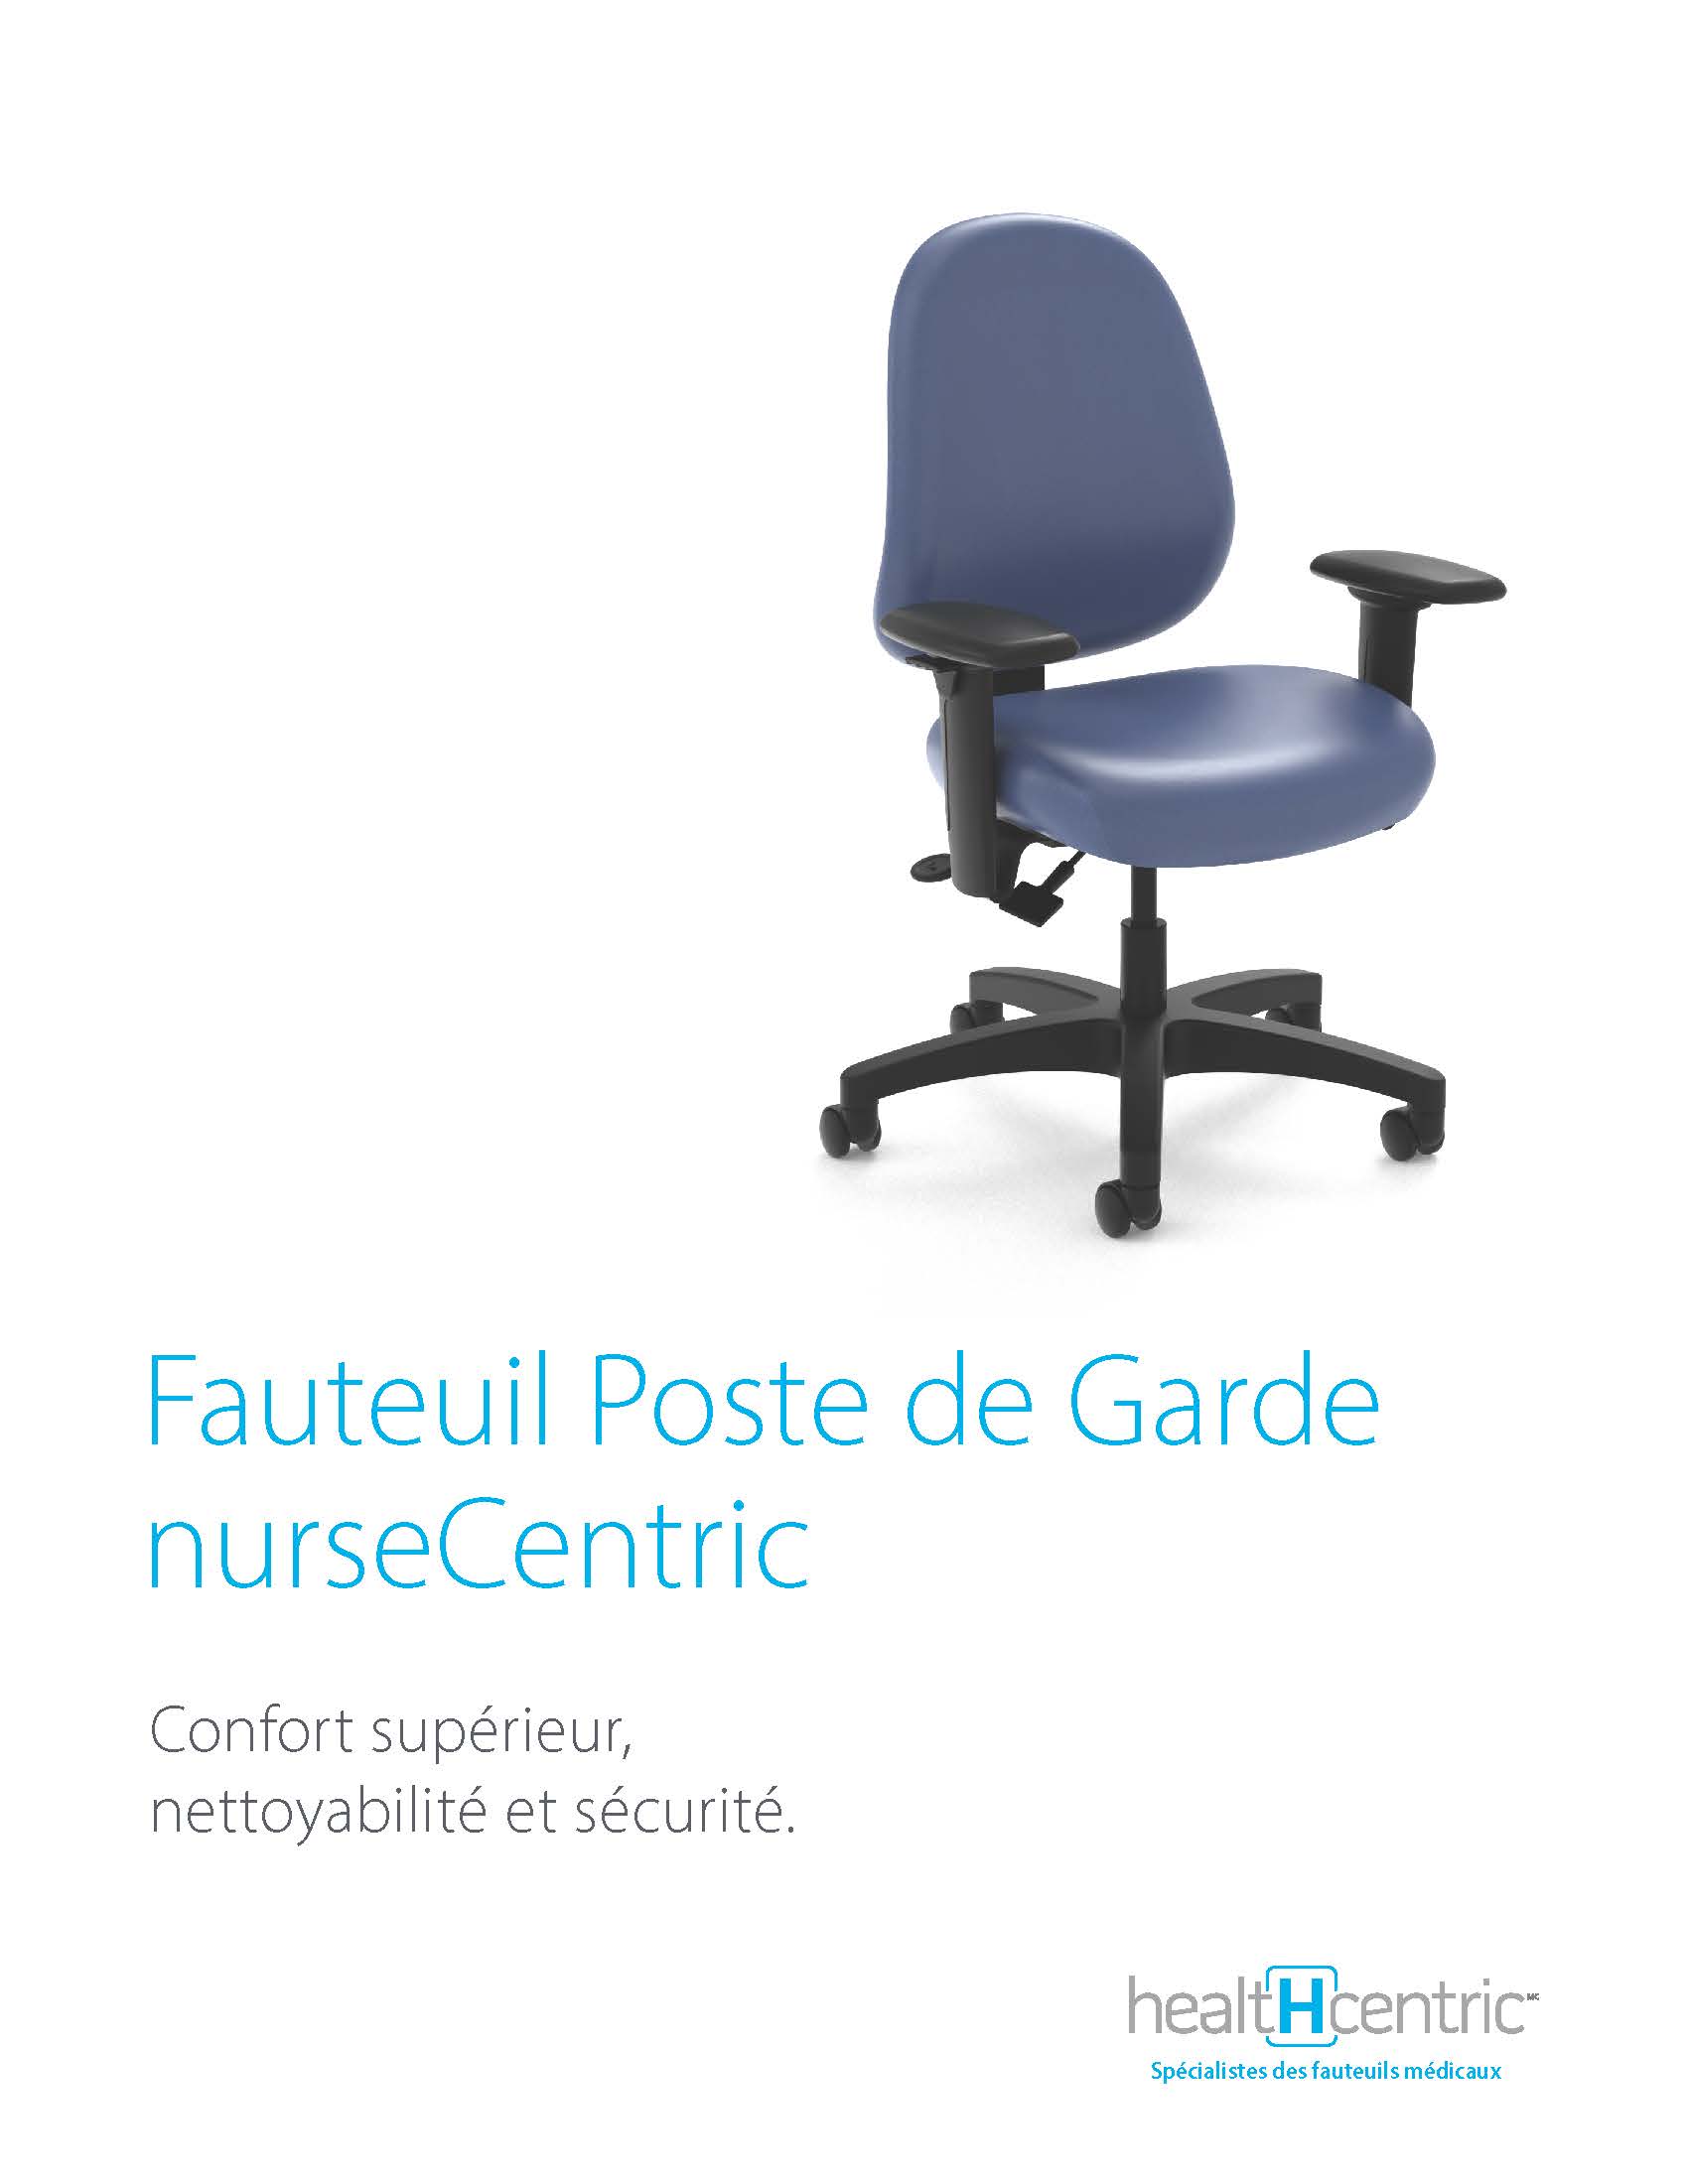 Fauteuil Poste de Garde nurseCentric